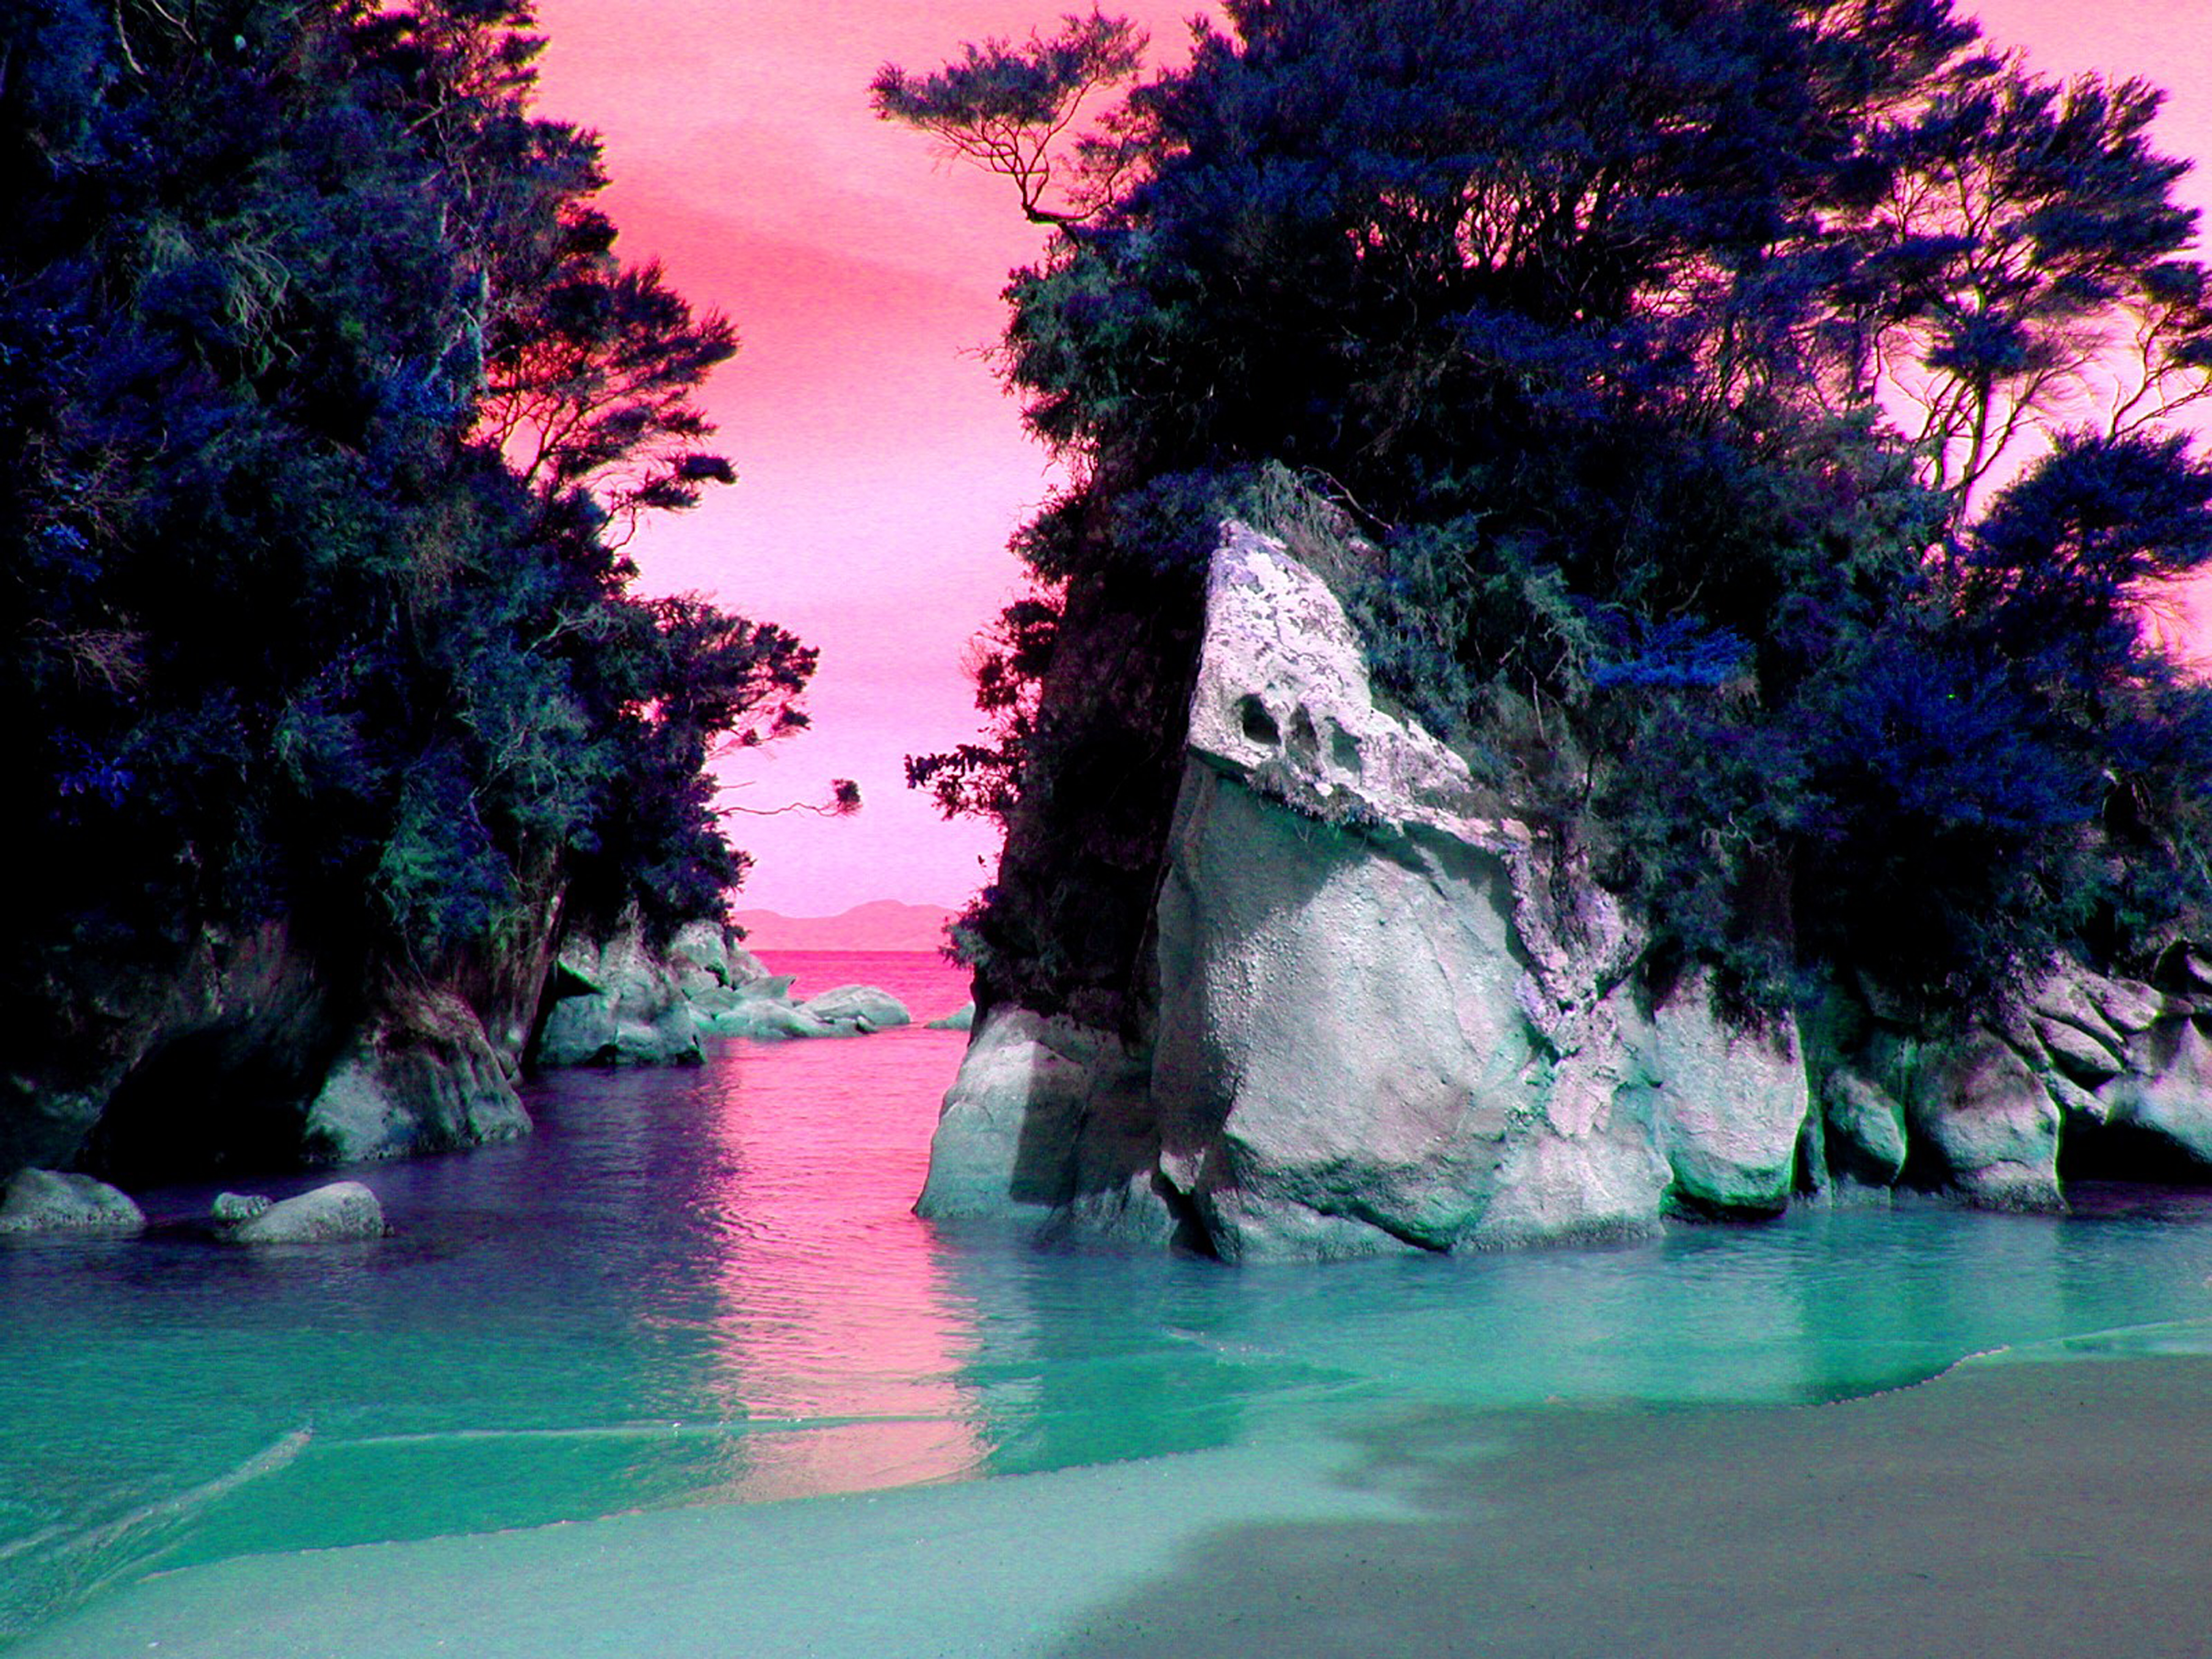 Ocean Island Background by jojo22 on DeviantArt